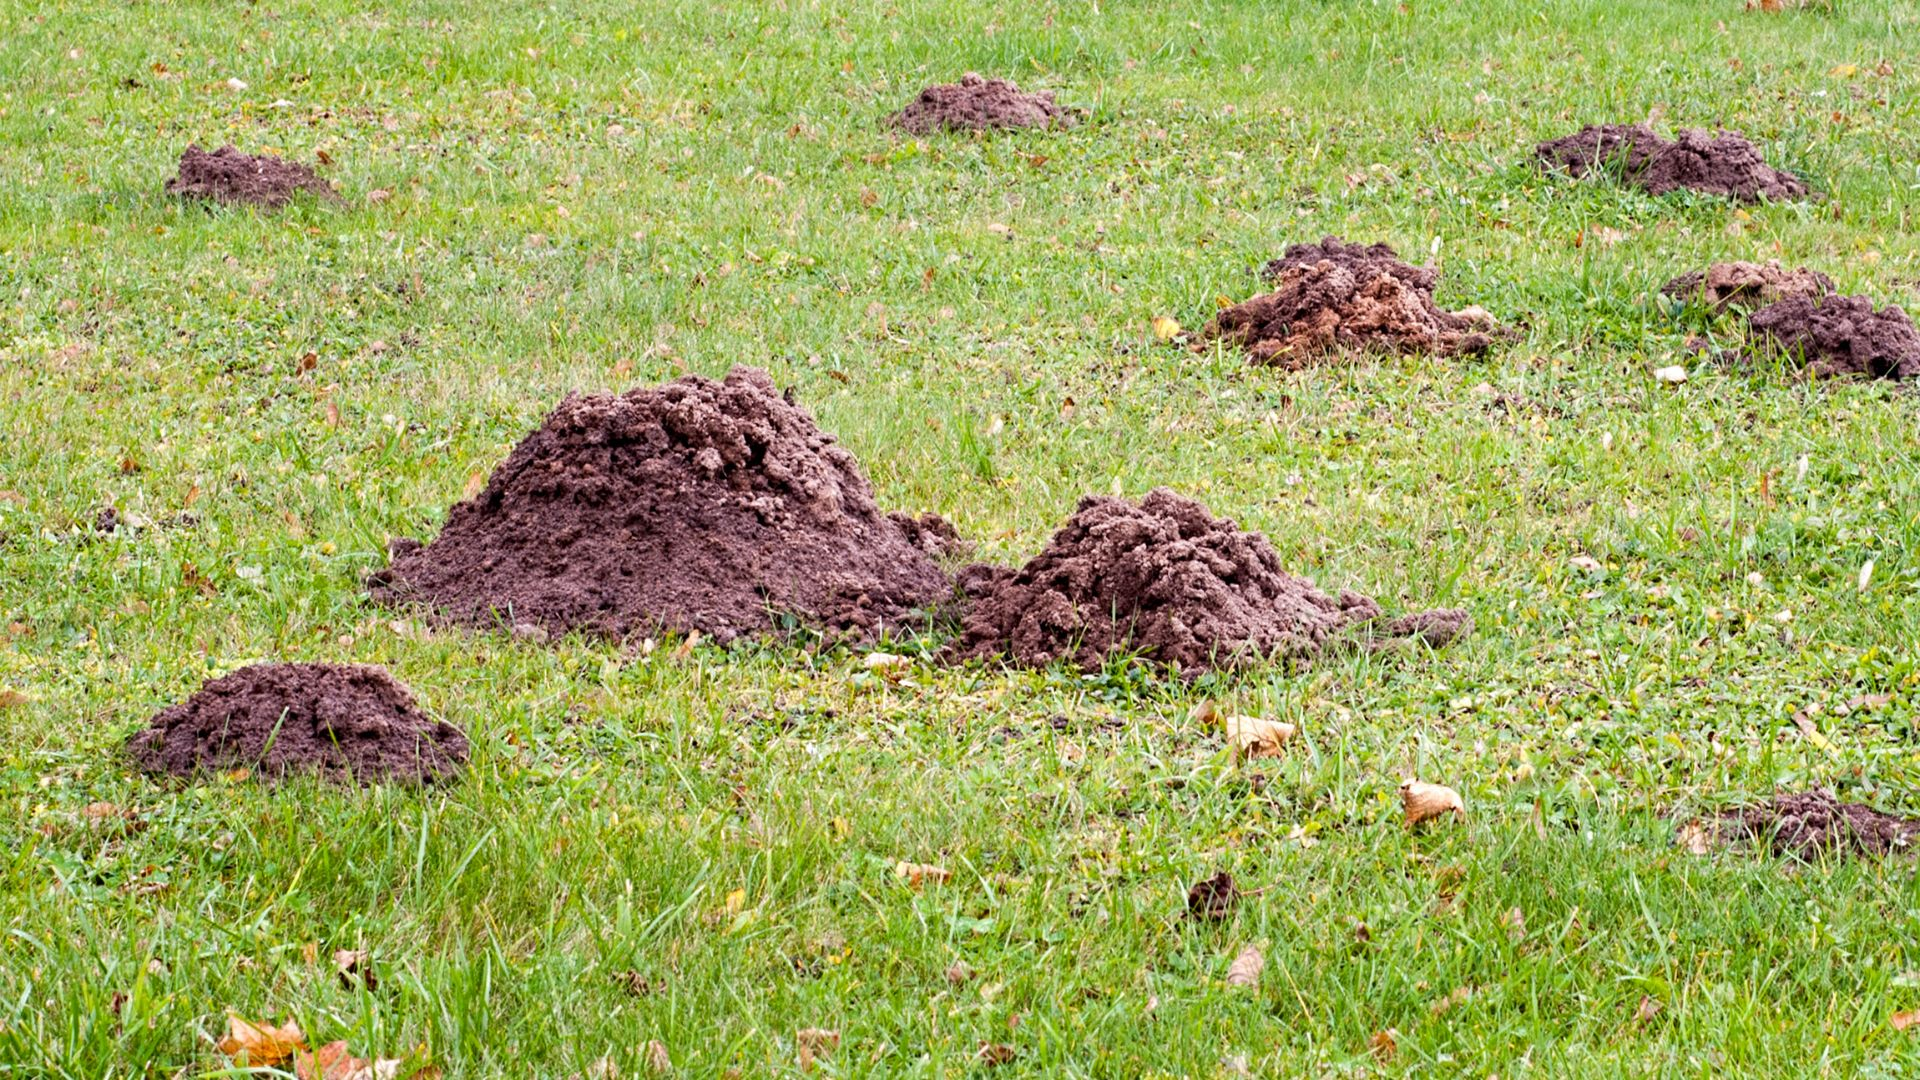 Identifying Molehills